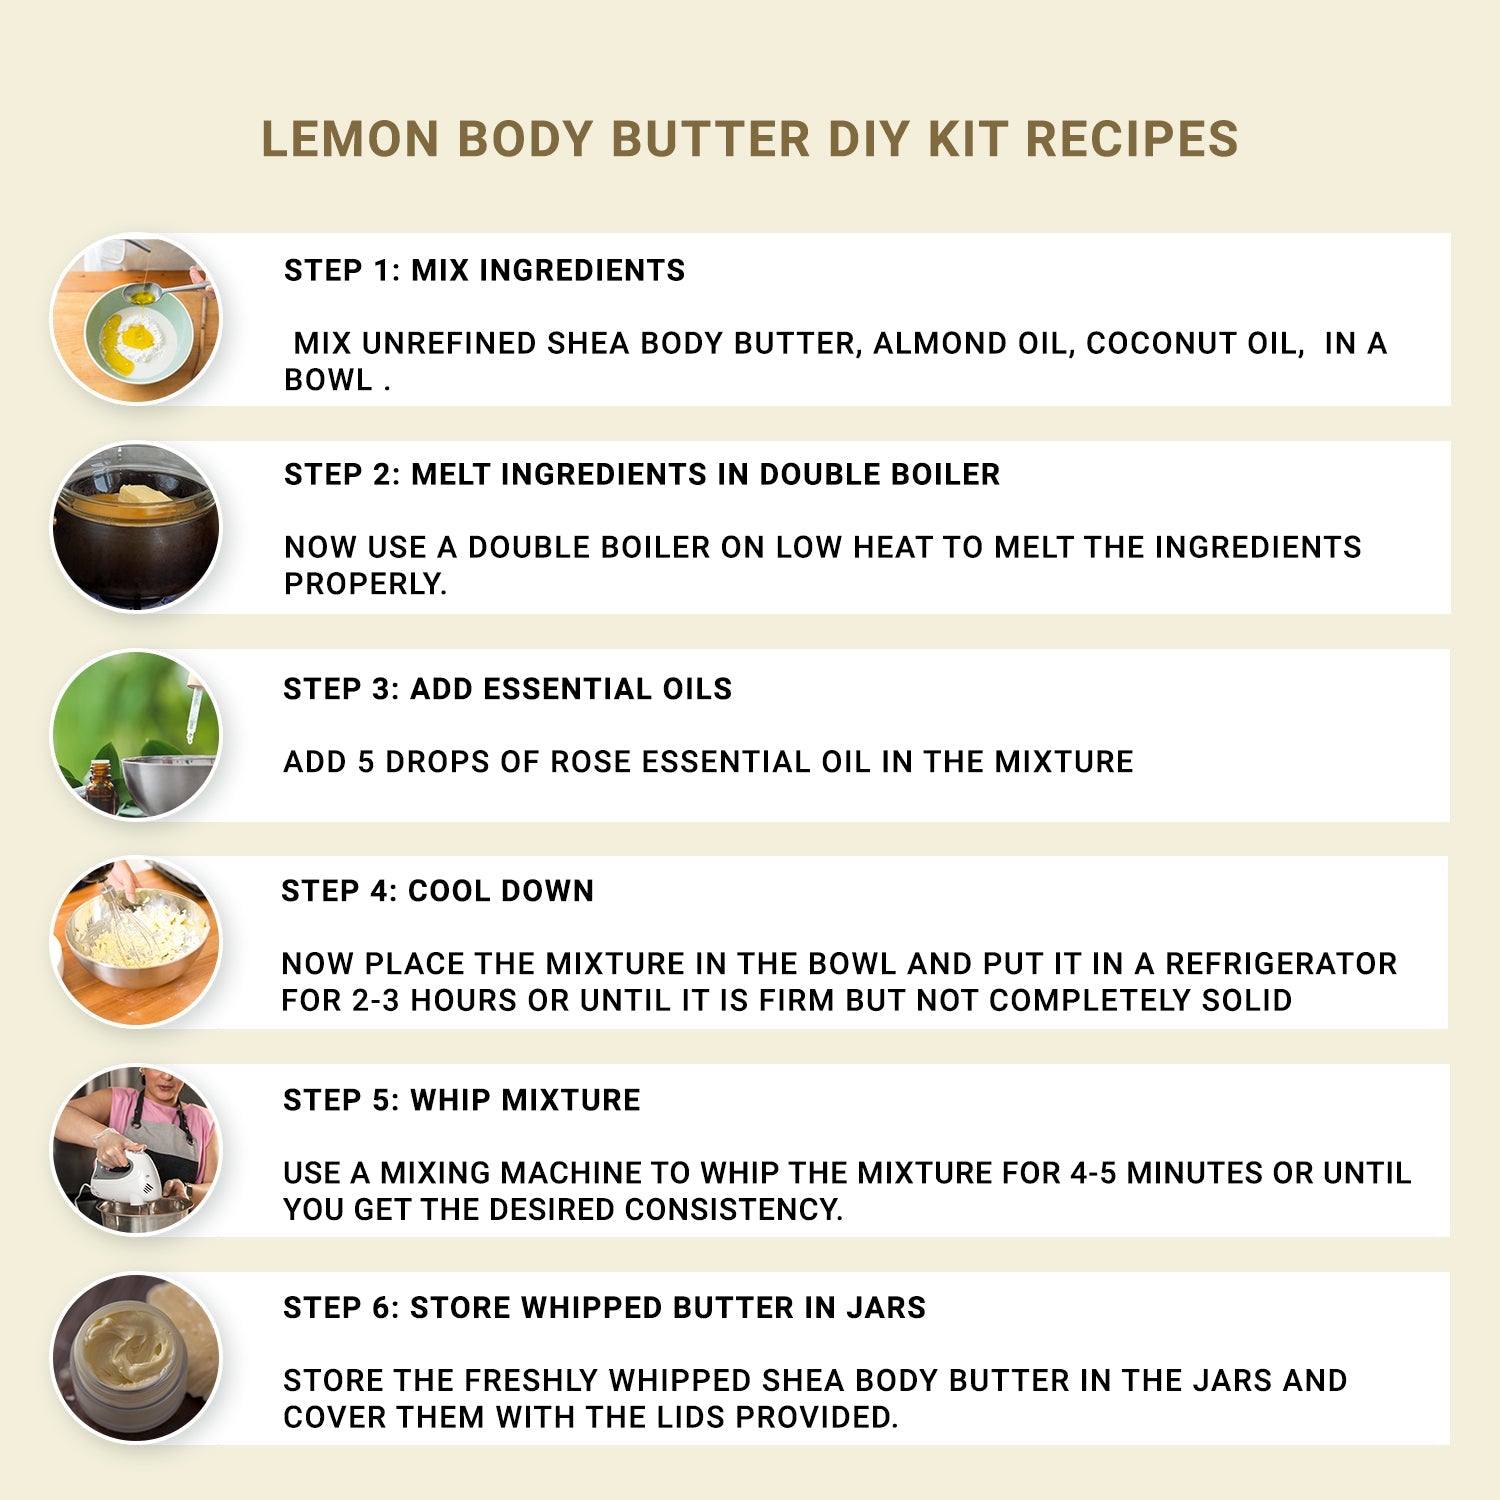 Lemon Body Butter Making Kit